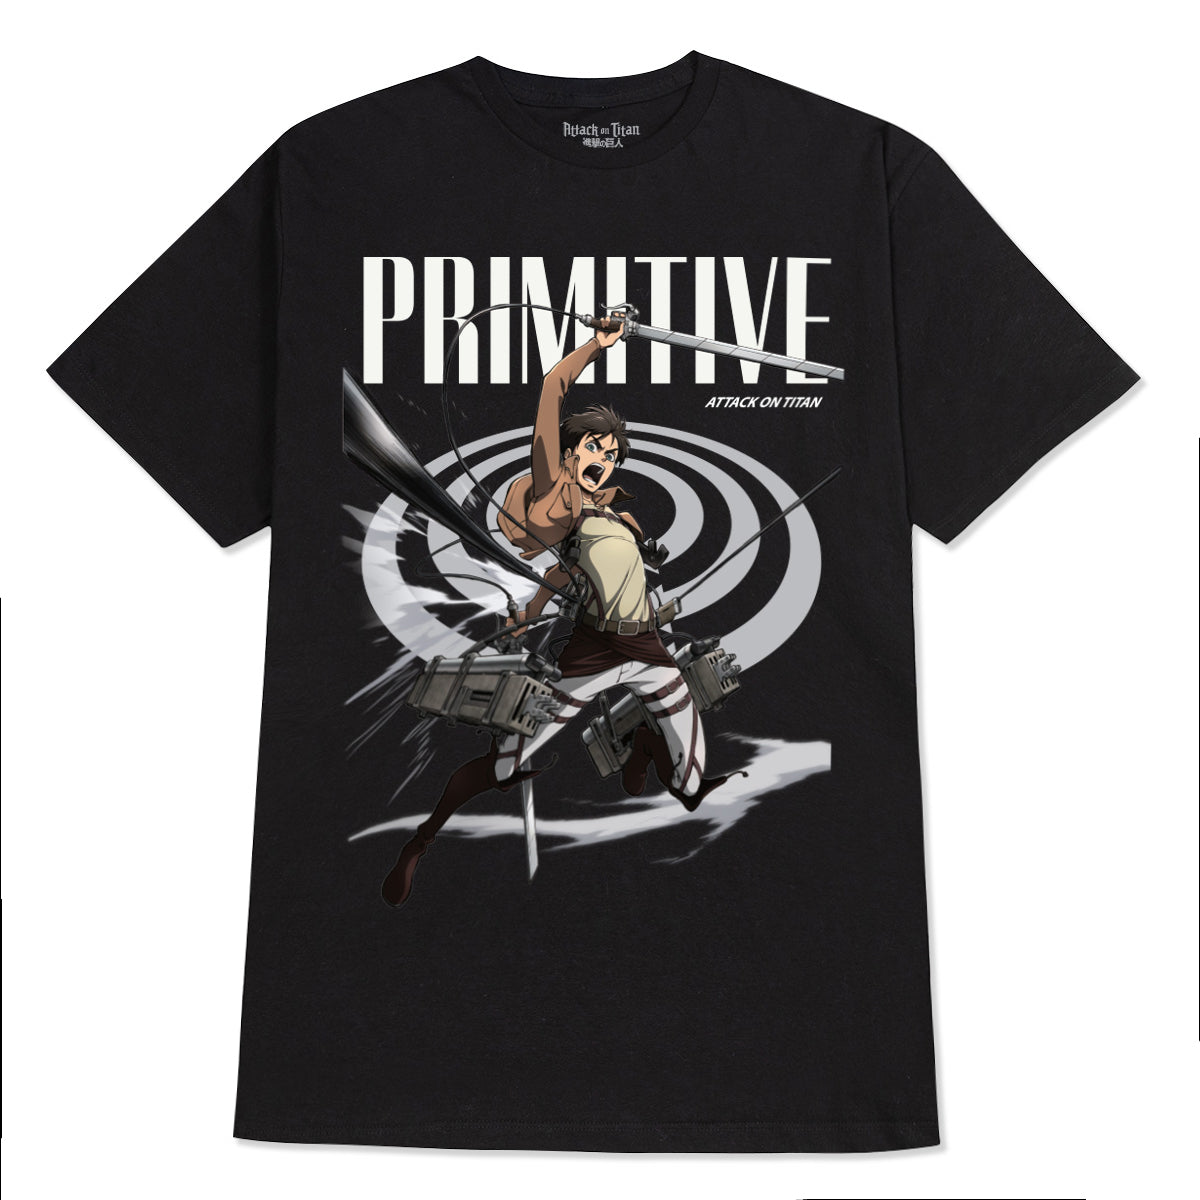 Primitive x Titans Eren T-Shirt - Black image 1